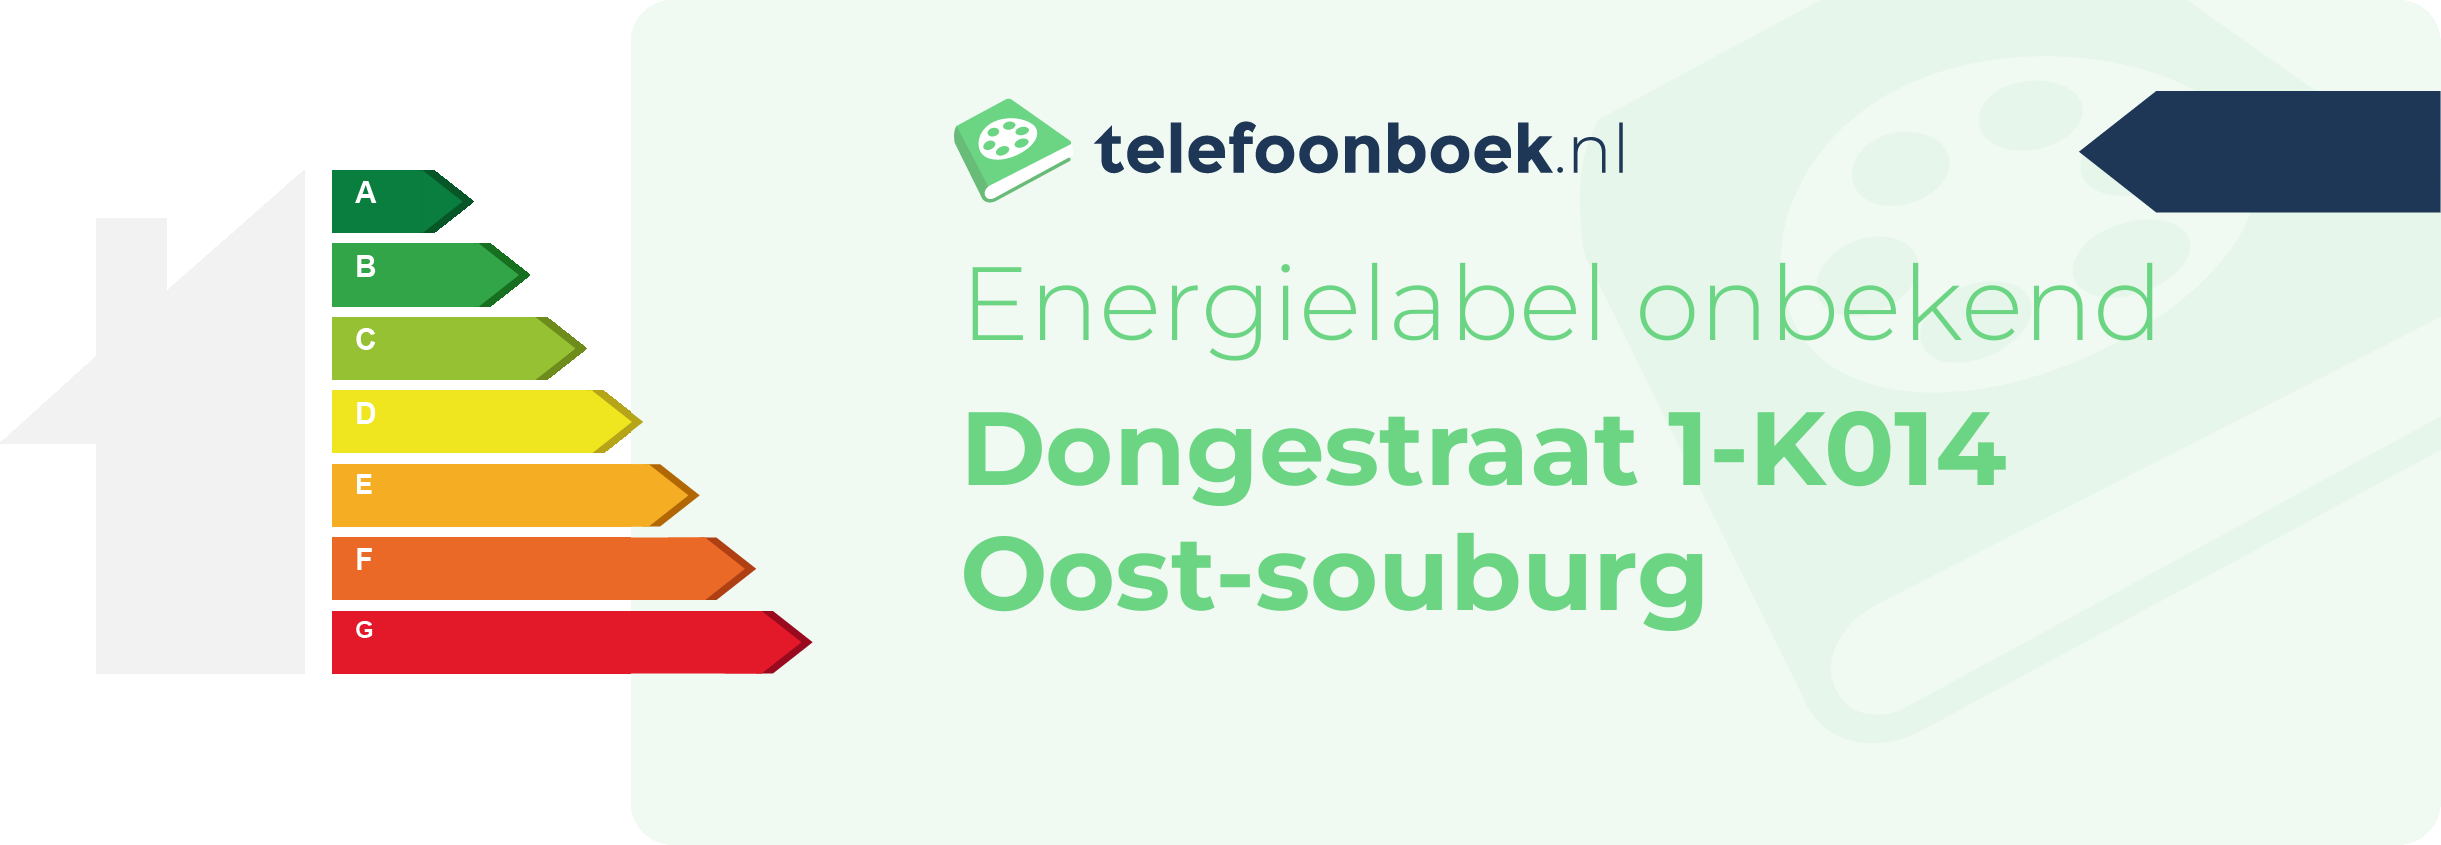 Energielabel Dongestraat 1-K014 Oost-Souburg